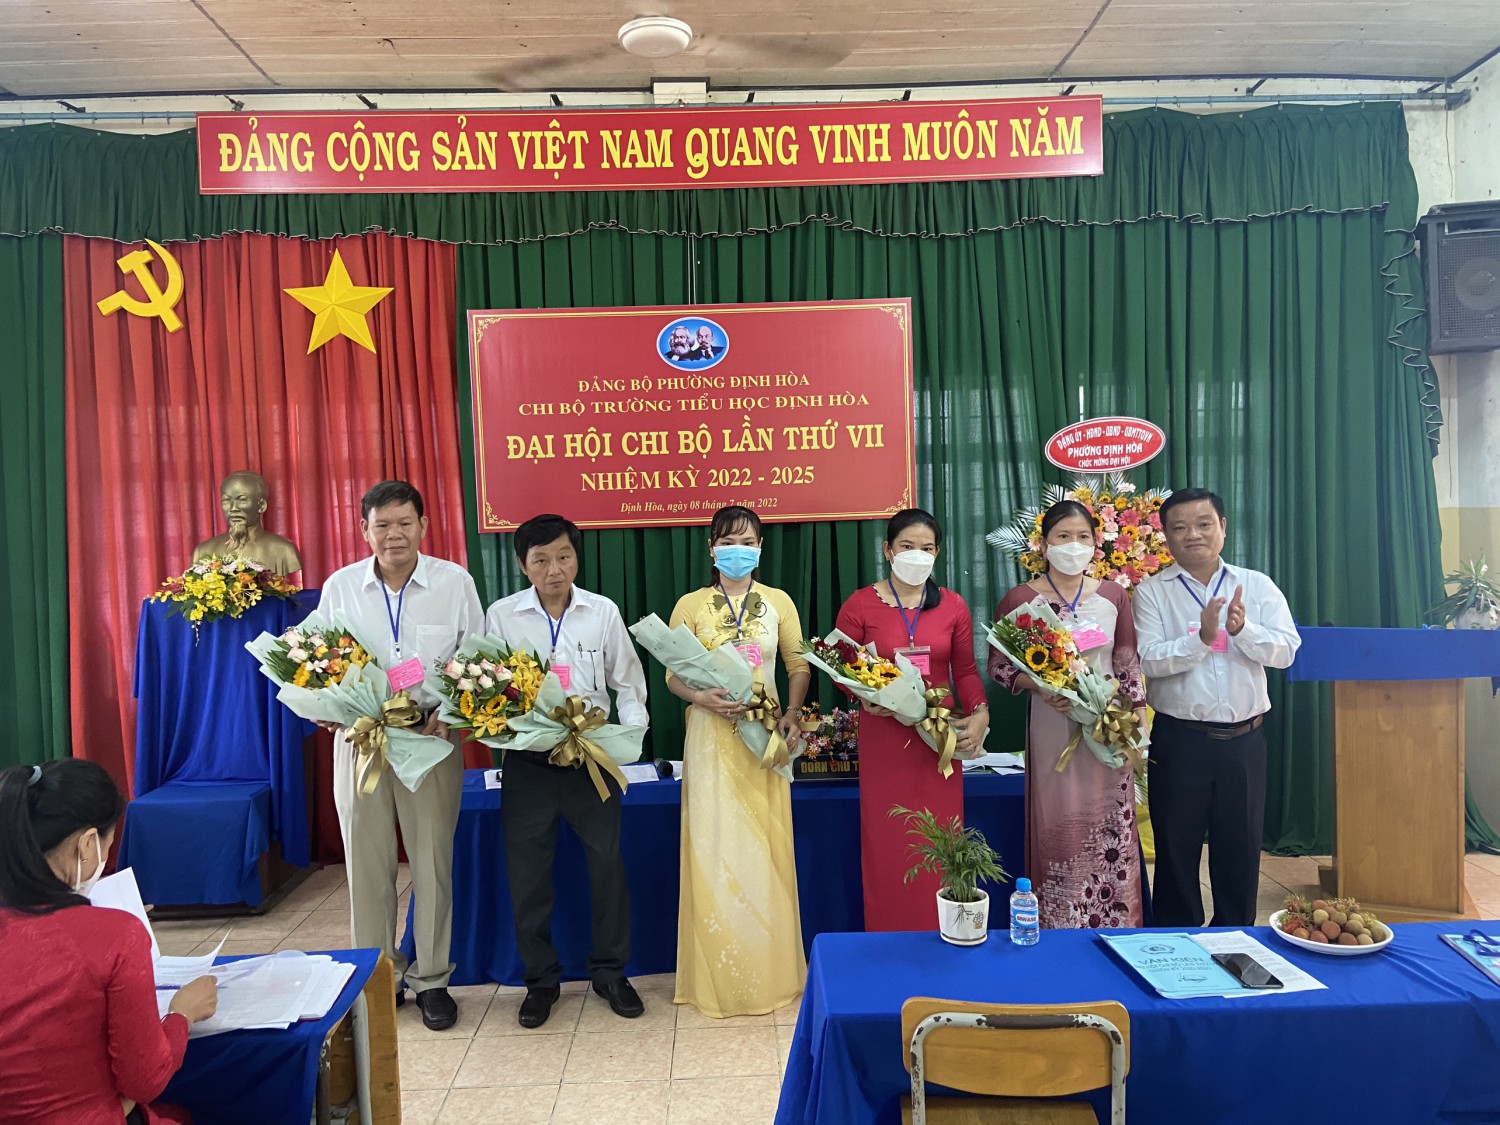 Đại hội chi bộ Trường tiểu học Định Hòa lần thứ VII nhiệm kỳ 2022 - 2025